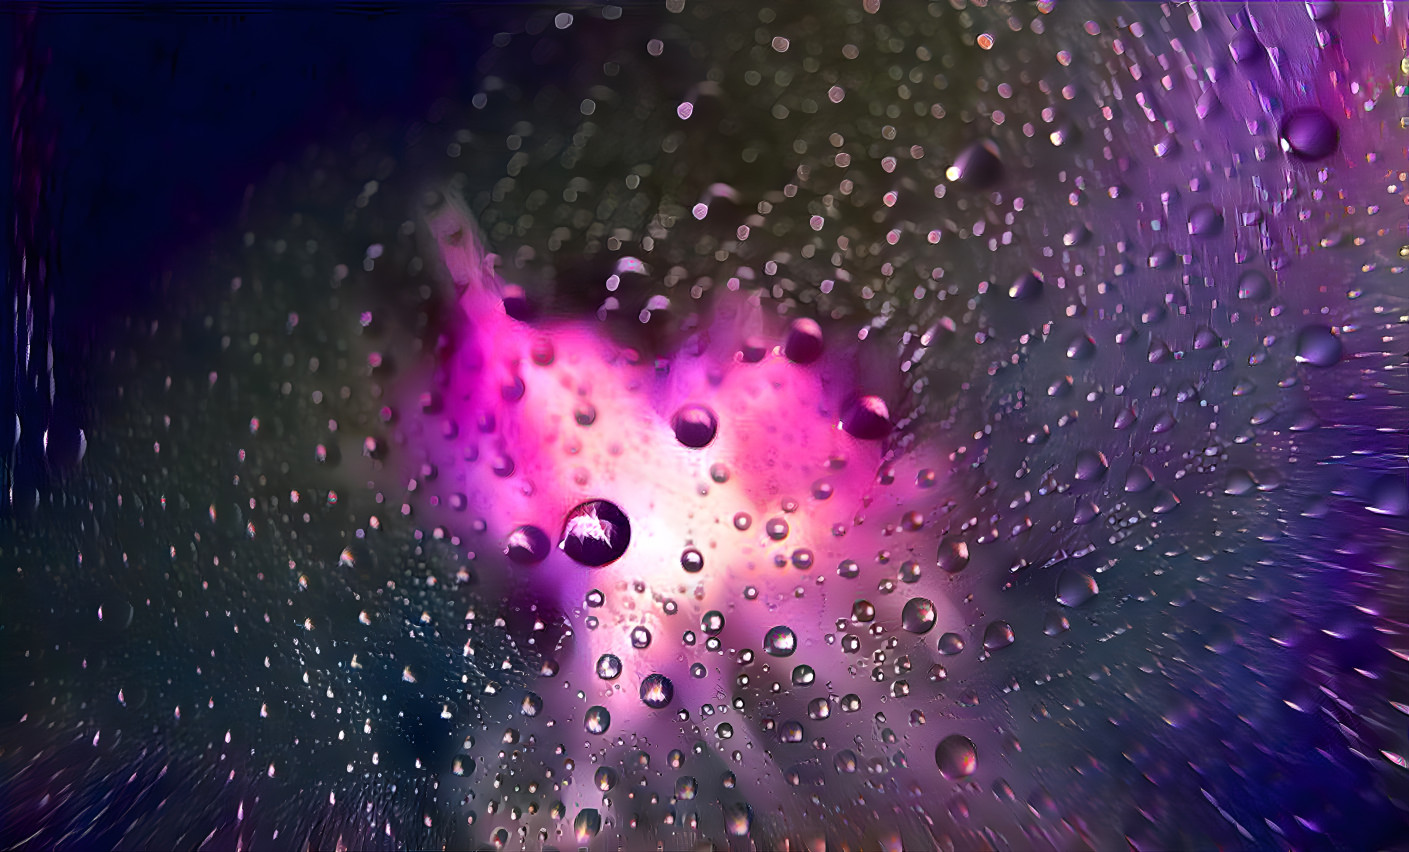 Burst of droplets - pink version